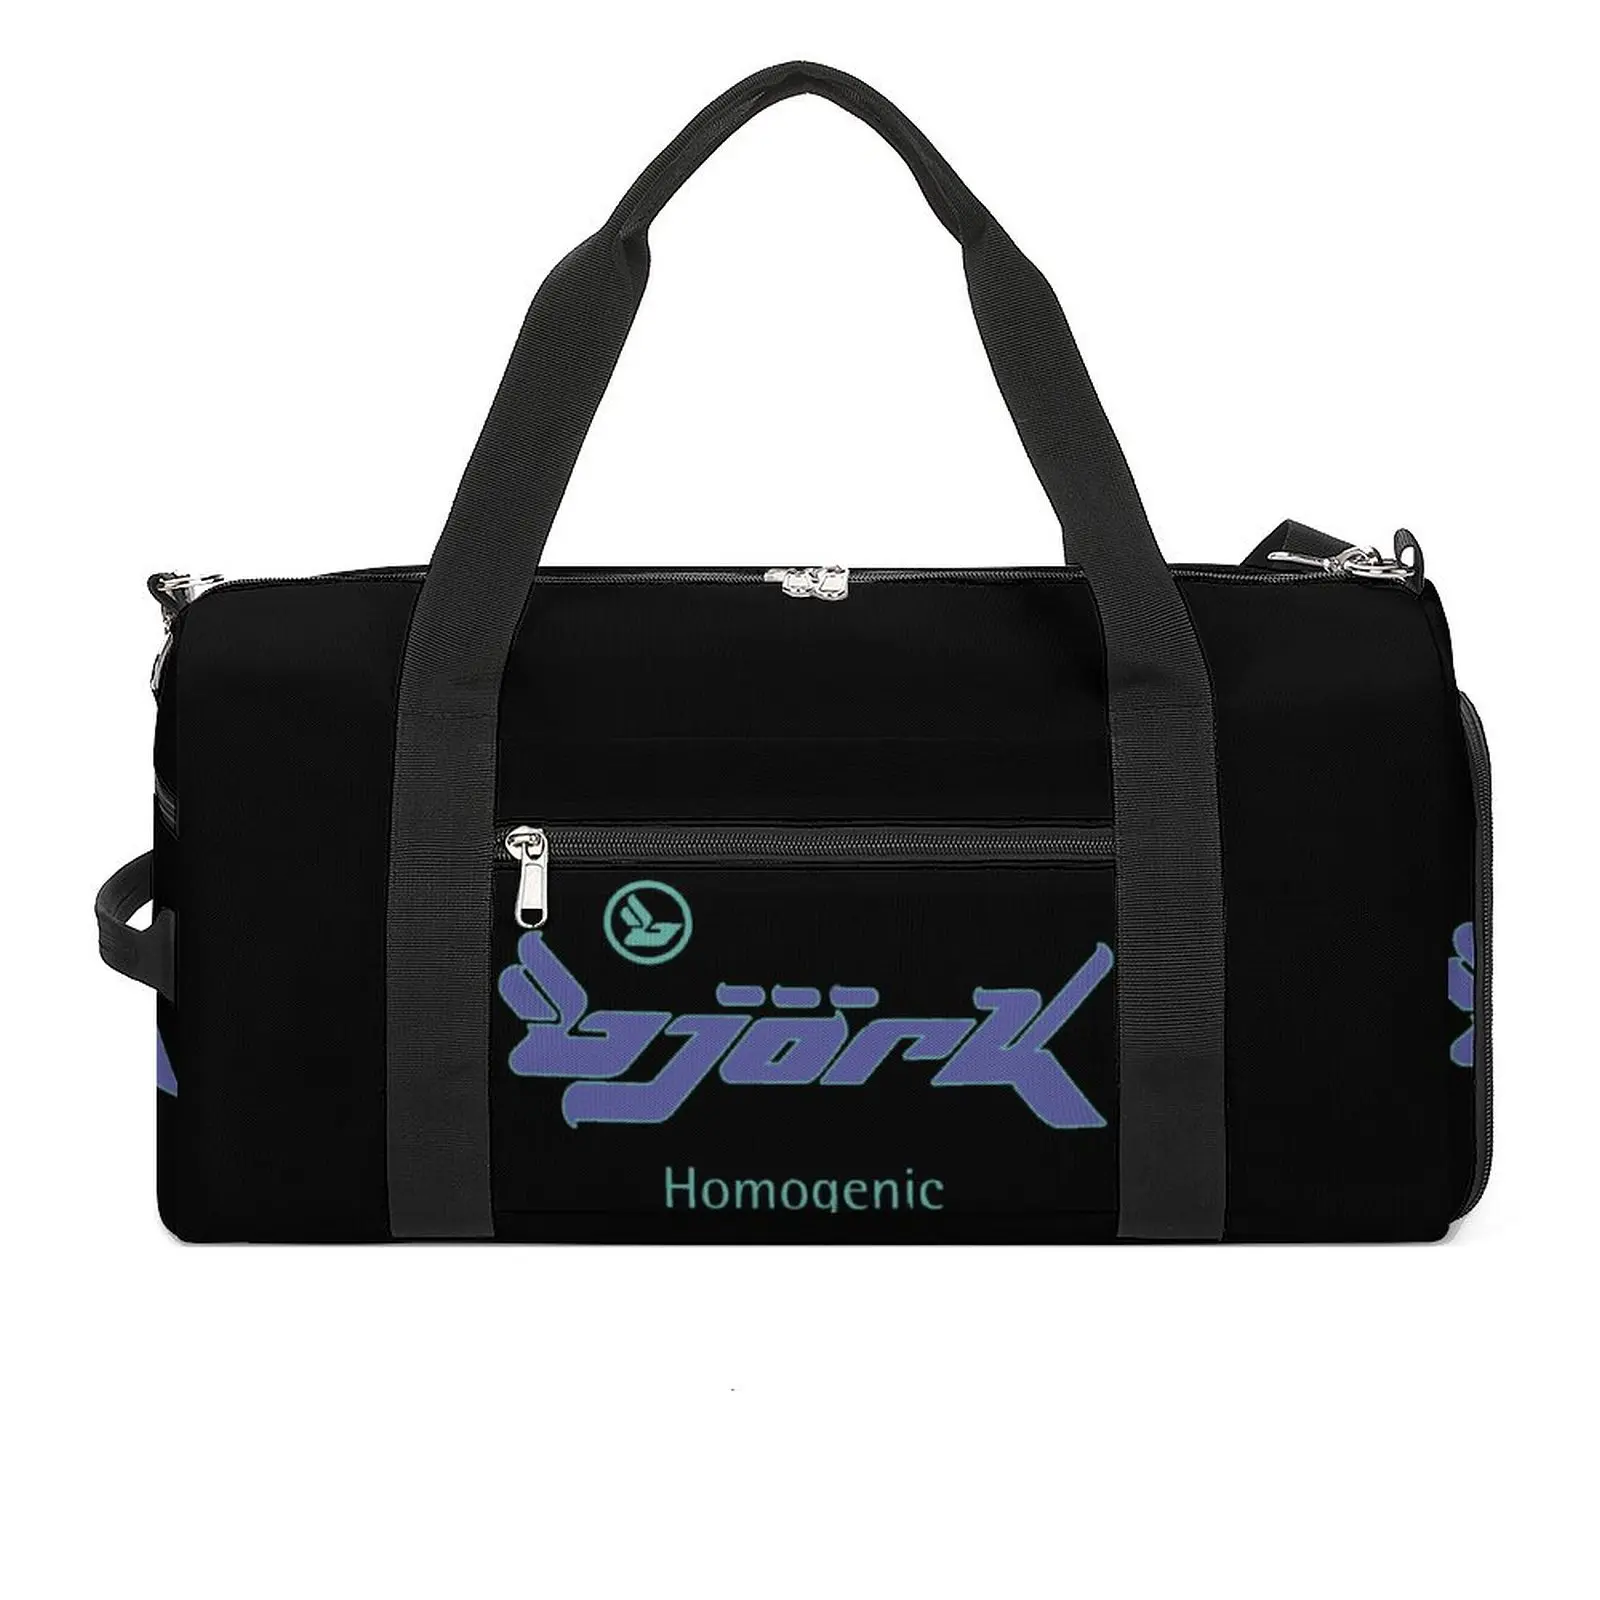 Графический Однородный логотип Bjork, спортивная сумка для путешествий, спортивные сумки для тренировок, дизайн пары, Большая графическая сумка для фитнеса, Оксфордские сумки0